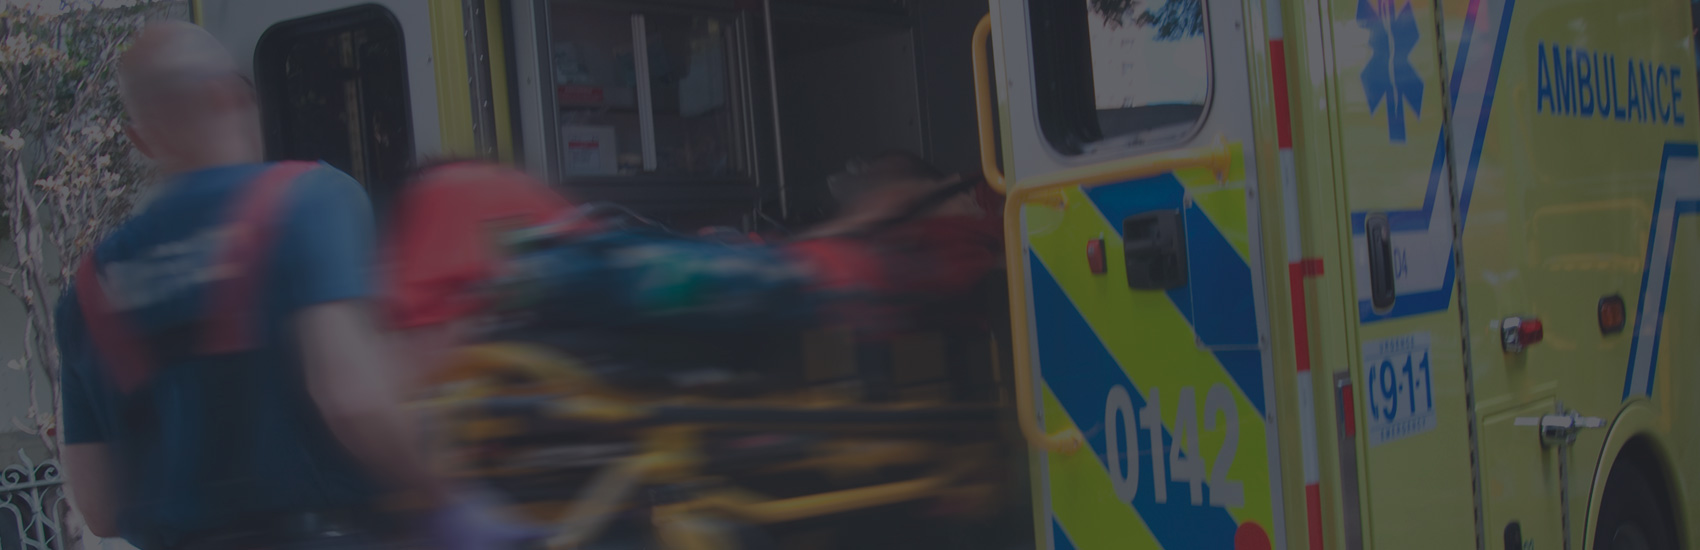 Transports ambulanciers : 6 villes de Vaudreuil-Soulanges dirigés vers l’Hôpital Anna-Laberge